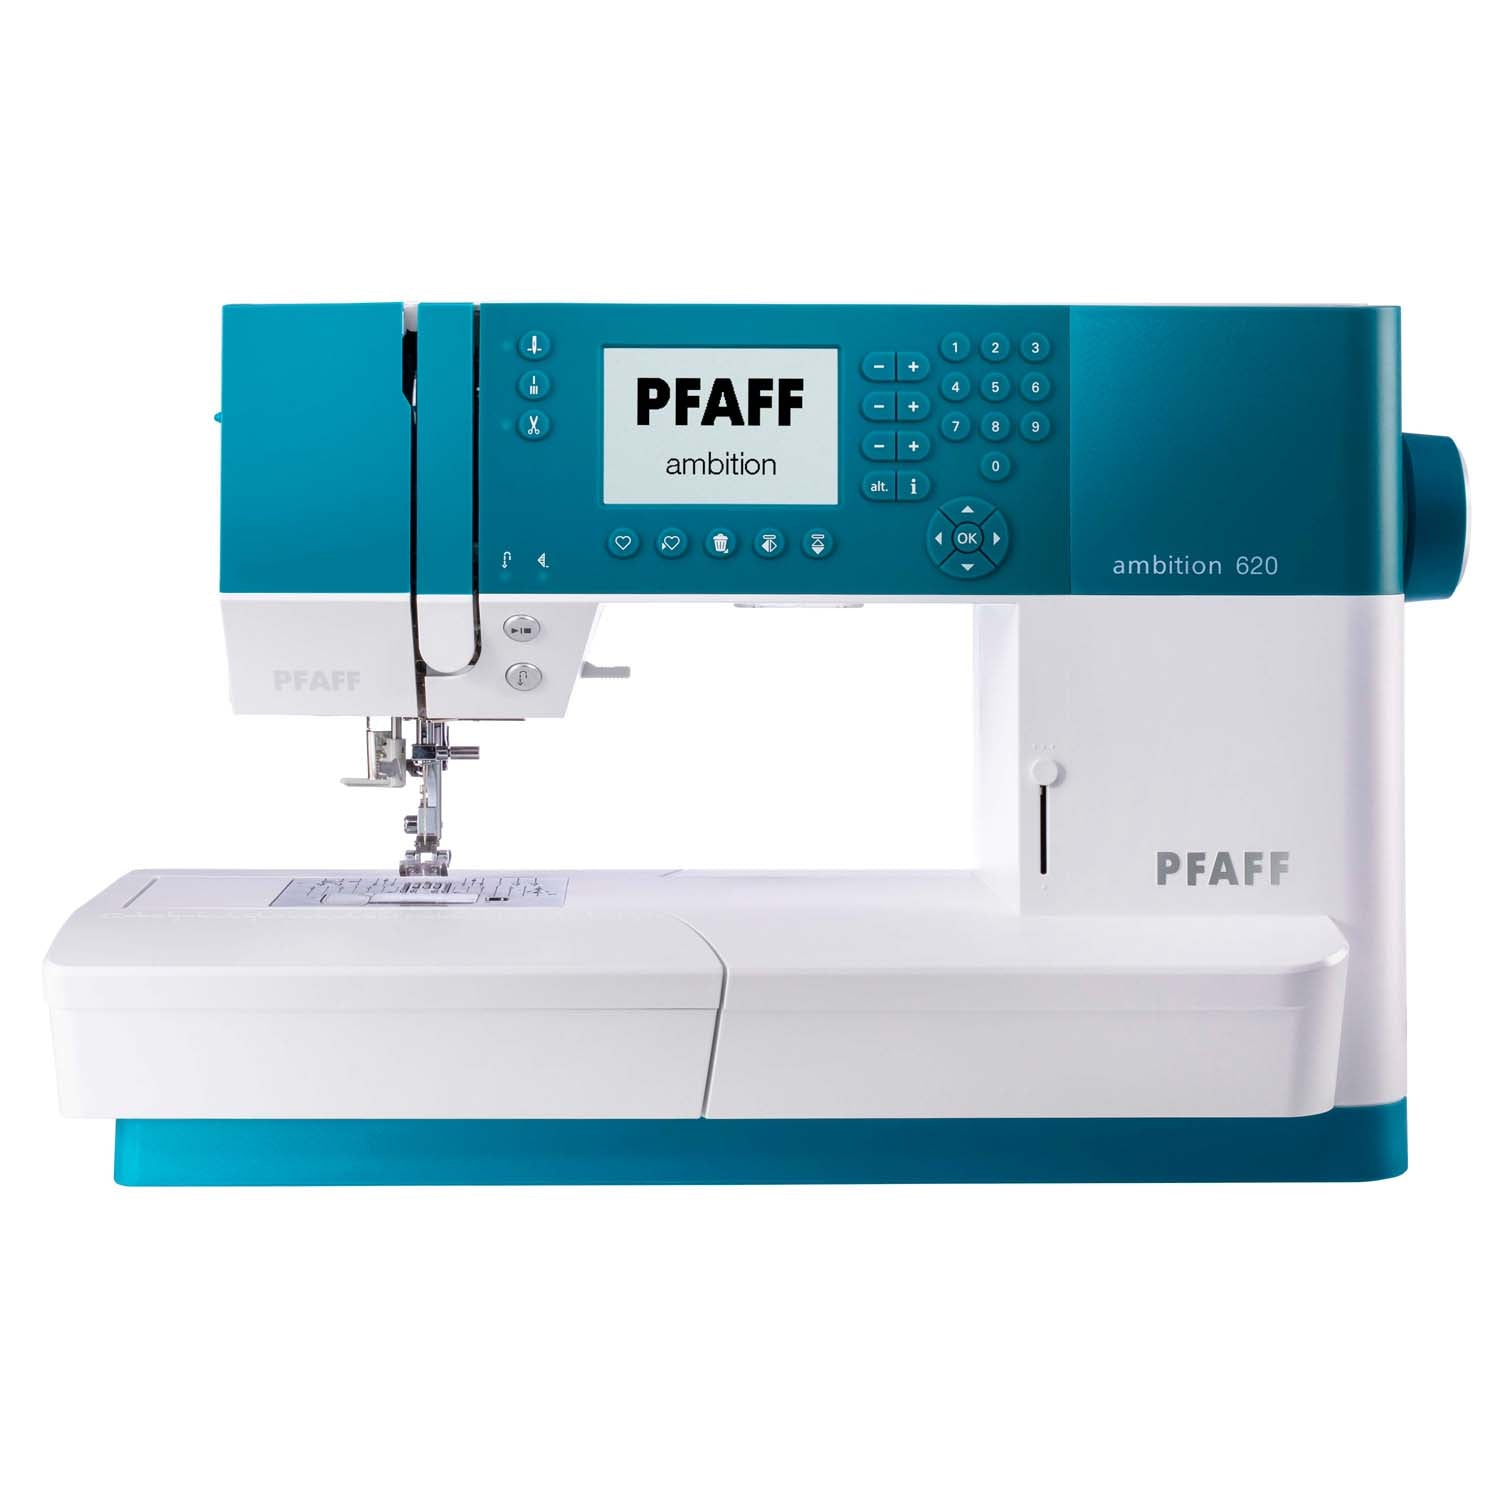 PFAFF Ambition 620 Sewing Machine